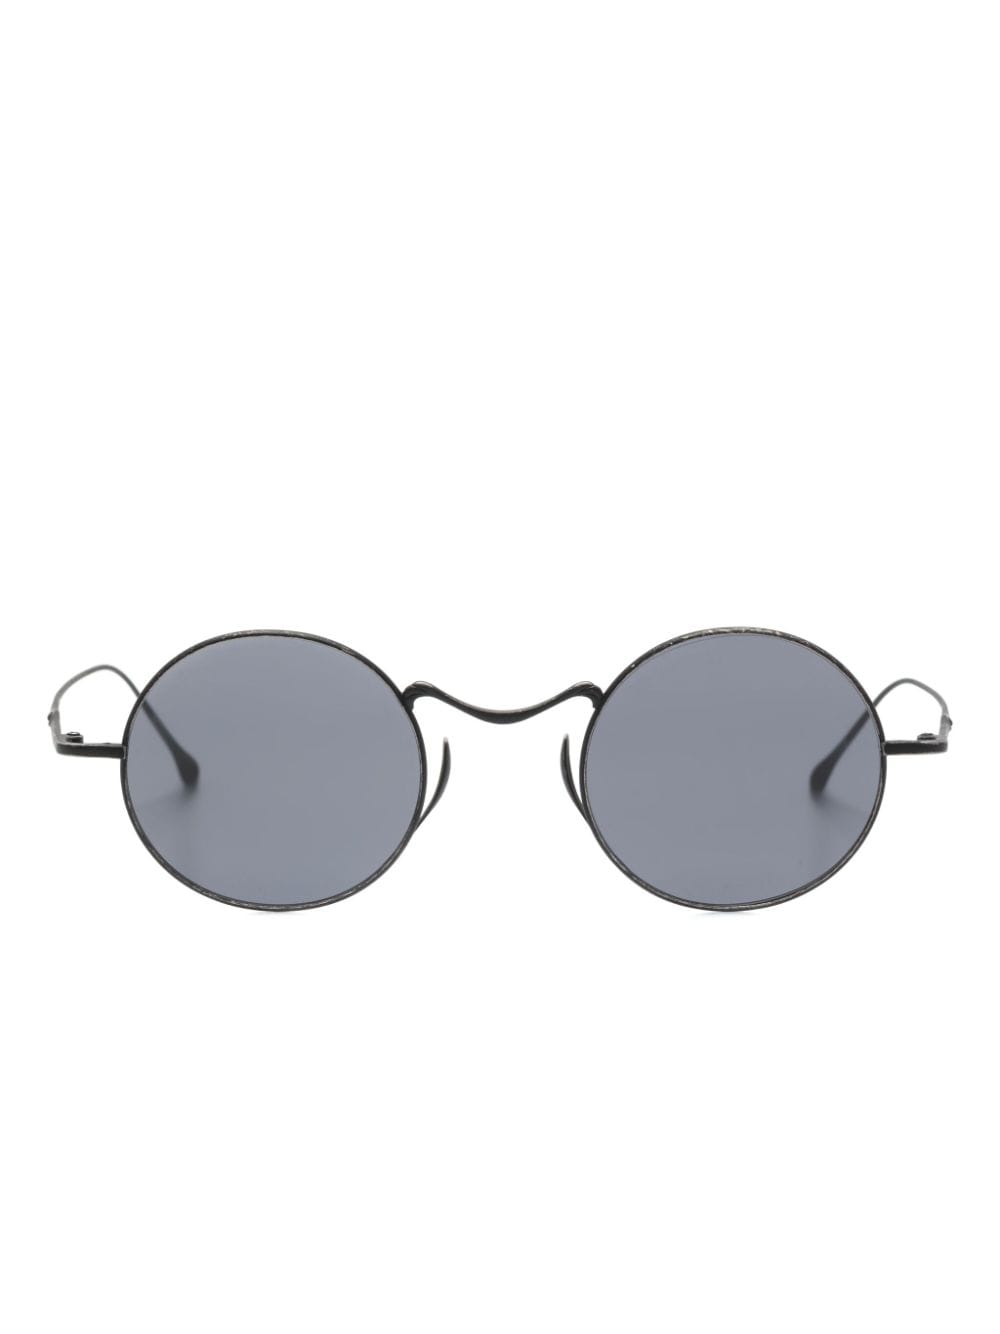 x Uma Wang round-frame sunglasses